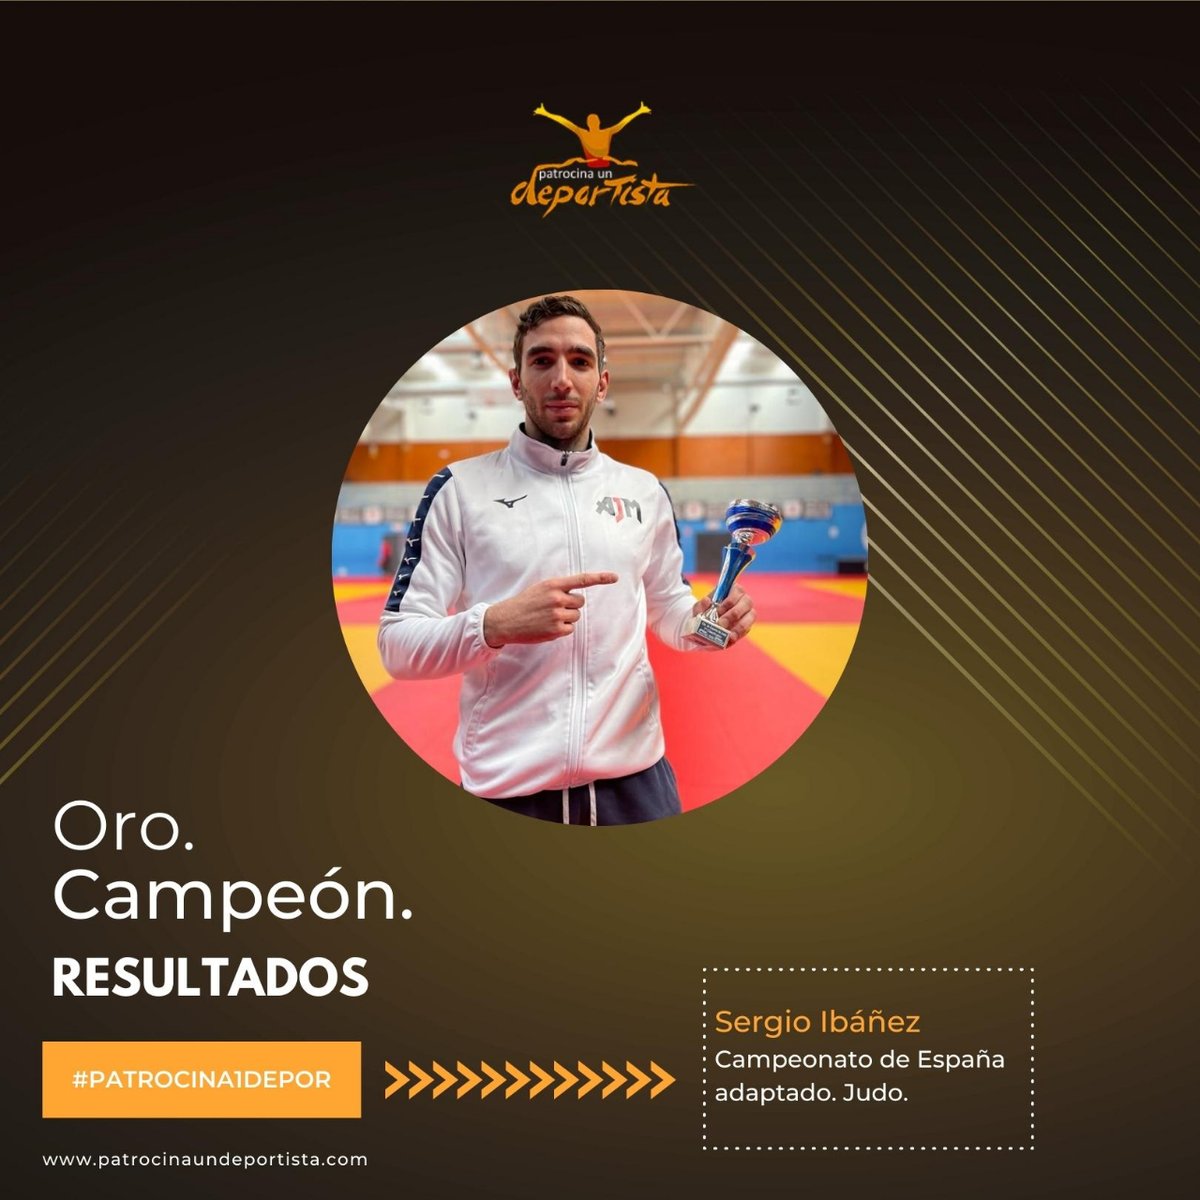 Enhorabuena @Sergio_I_B 🥇 Oro en el Campeonato de España adaptado (#judo) ✌️ #patrocina1depor #campeondeespaña